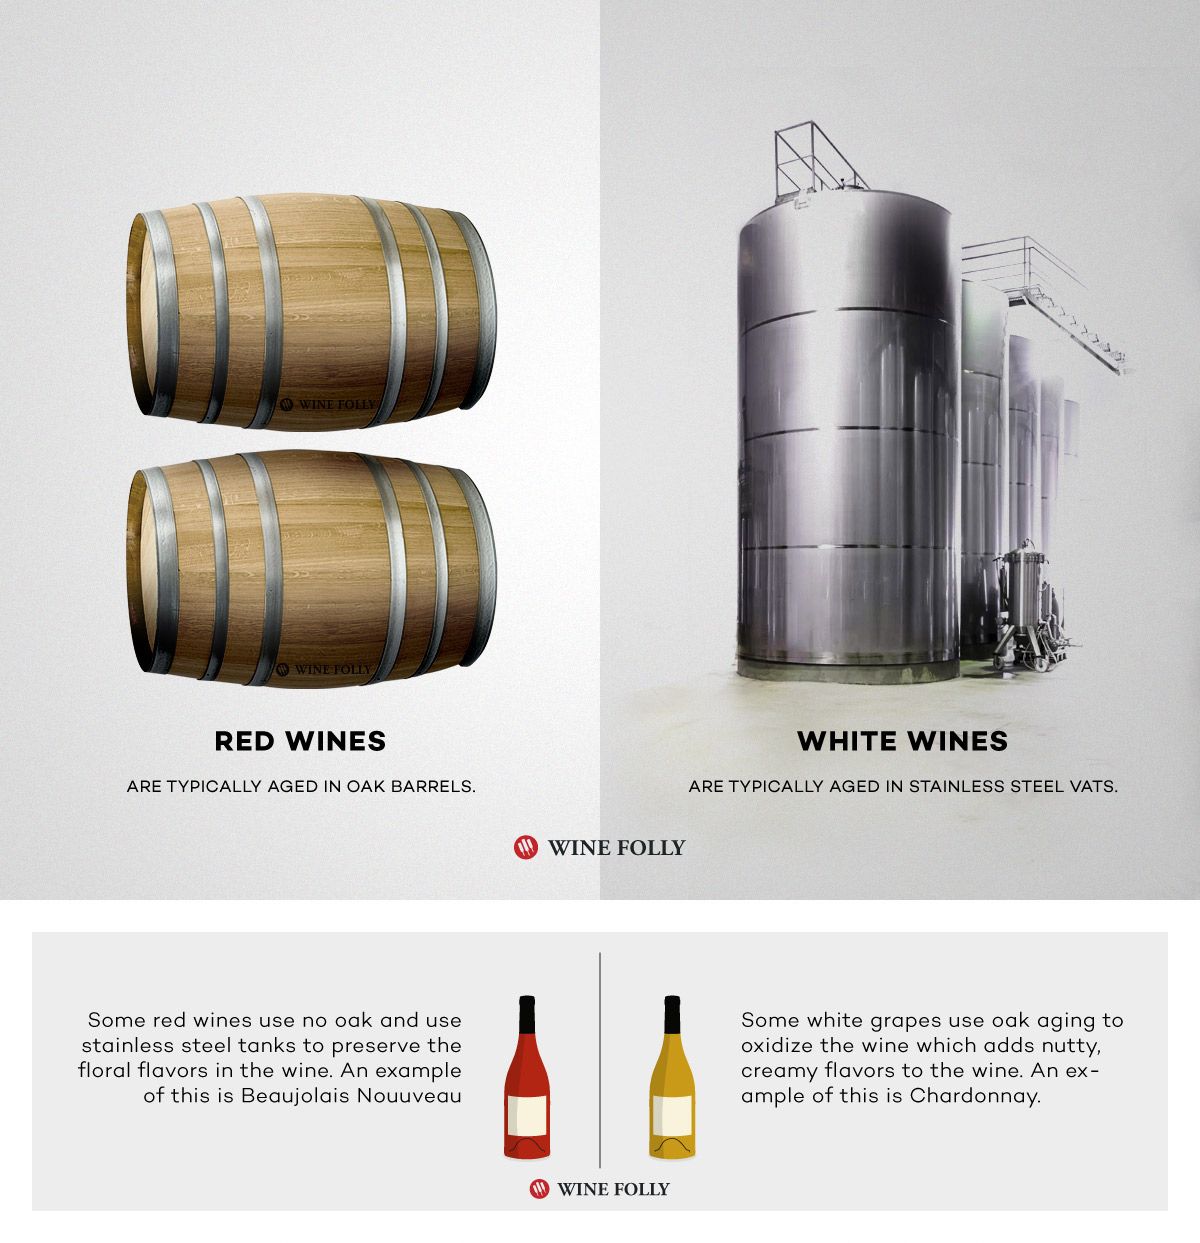 Červené víno vs Biele víno zreje rozdielne z nehrdzavejúcej ocele oproti dubovému sudu zrejúcemu pomocou Wine Folly